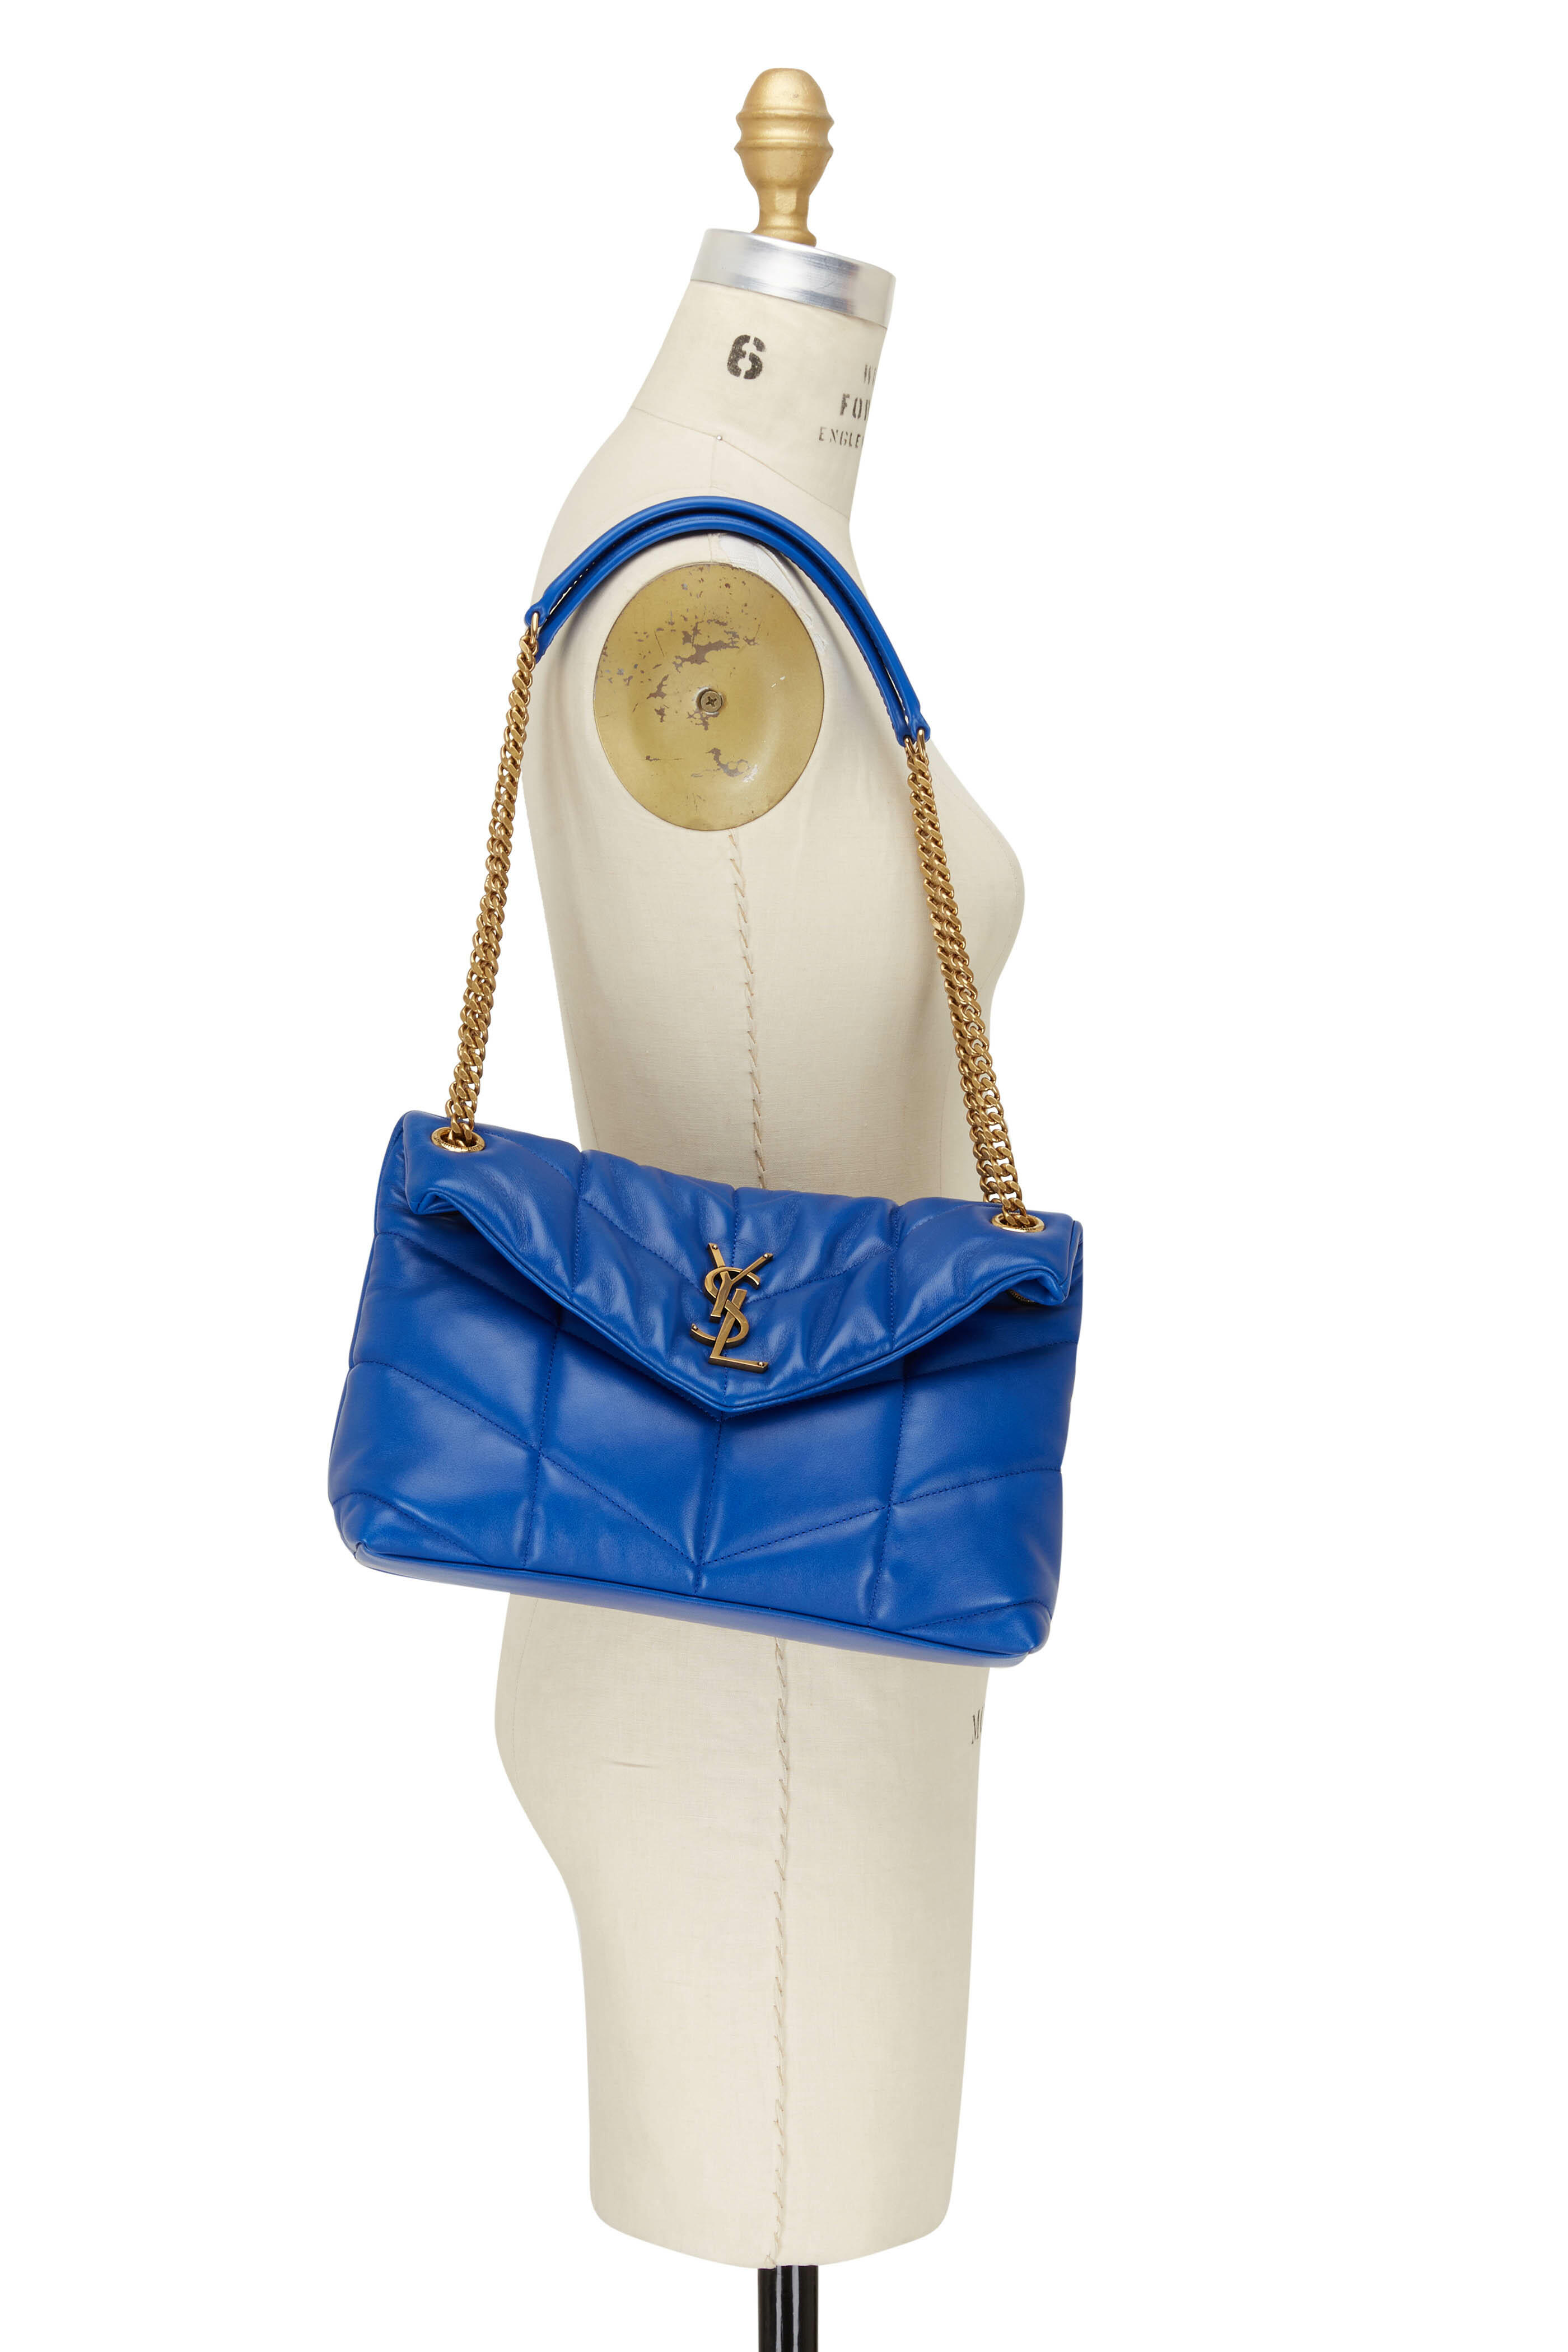 Saint Laurent Small Ysl Shoulder Bag - Light Blue